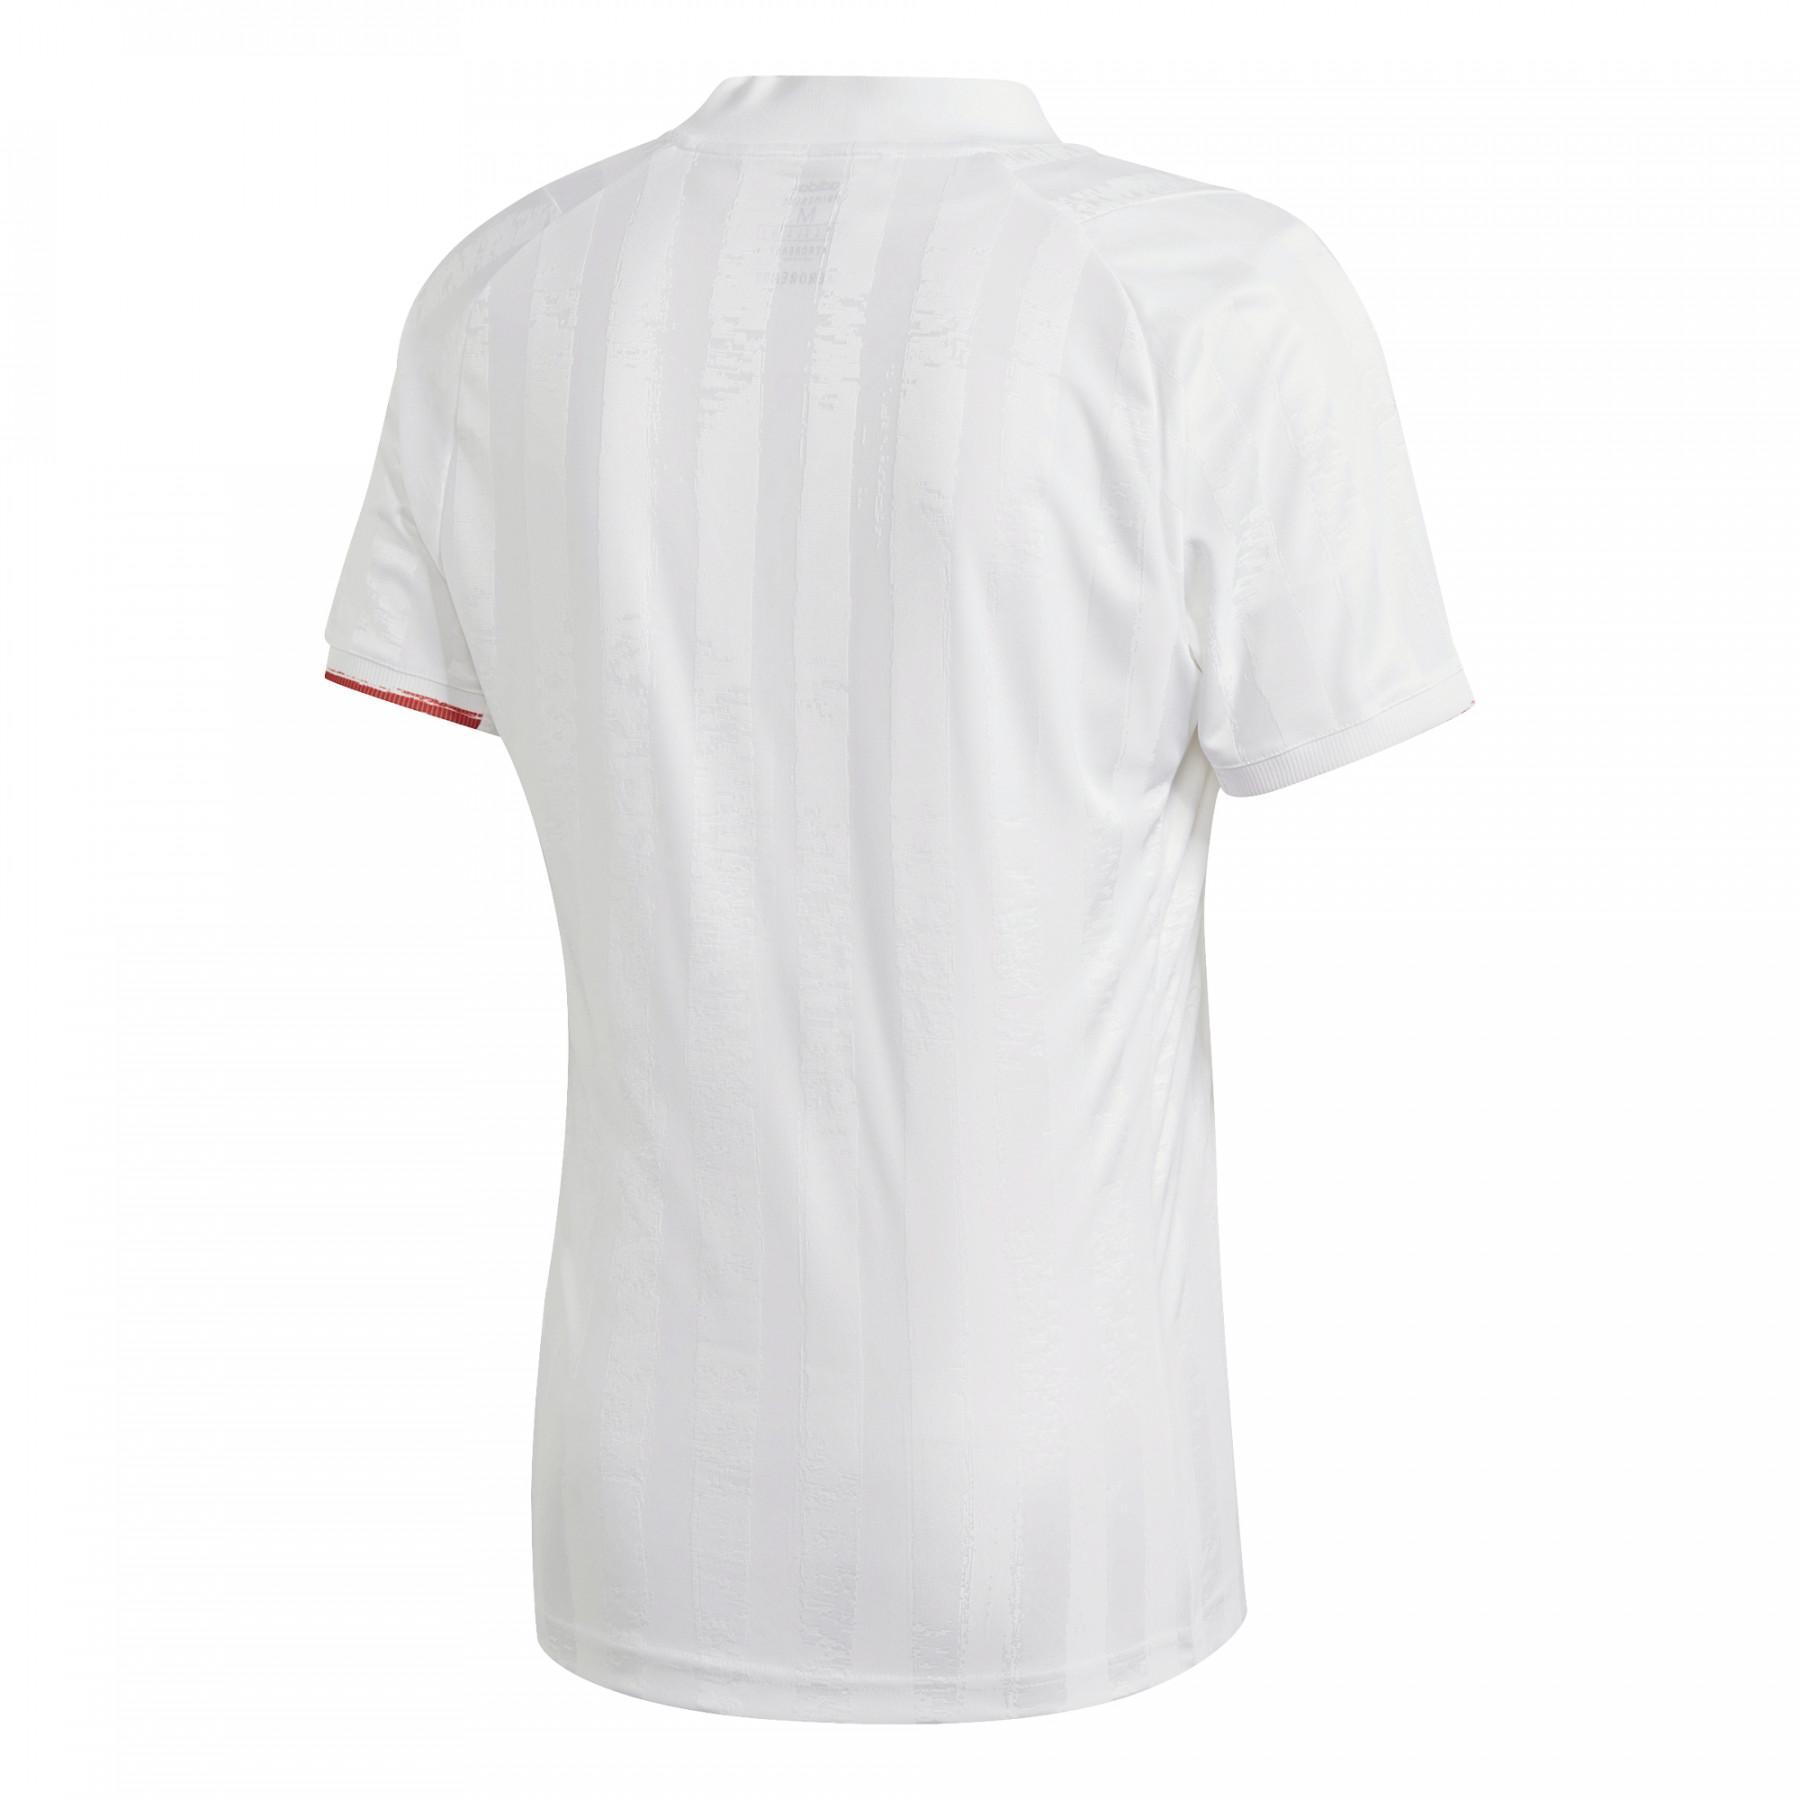 Camiseta adidas Freelift Tennis Engineered